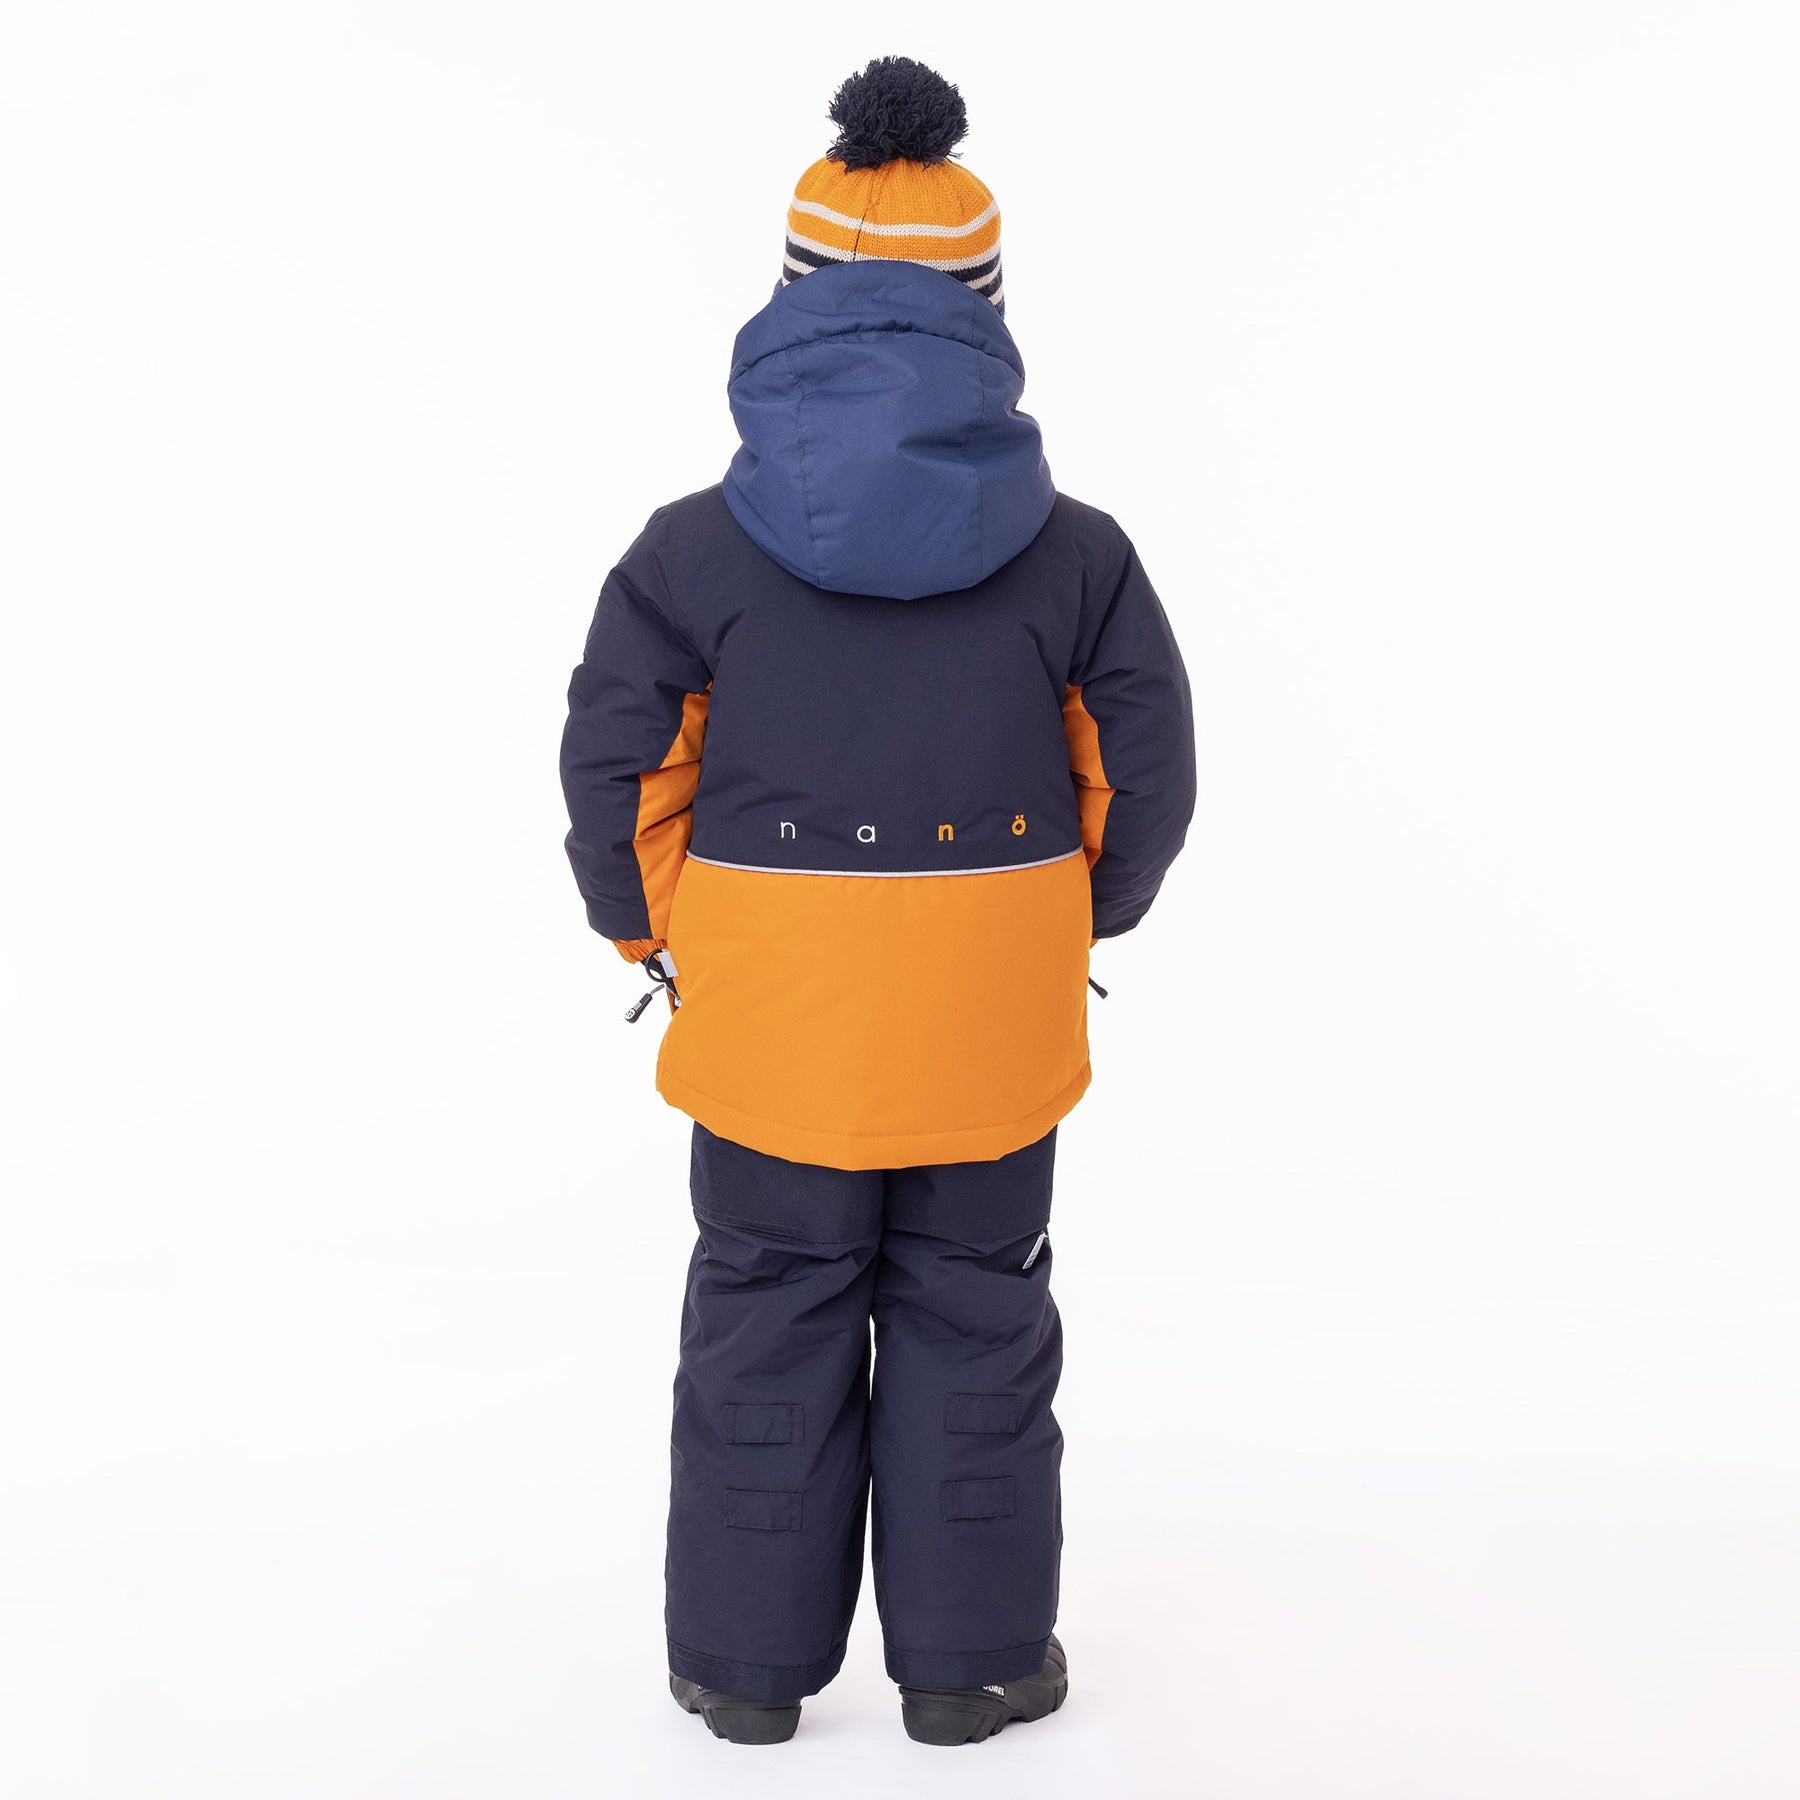 Habit de neige pour enfant garçon par Nanö | Remi/F23M203 Orange | Boutique Flos, vêtements mode pour bébés et enfants